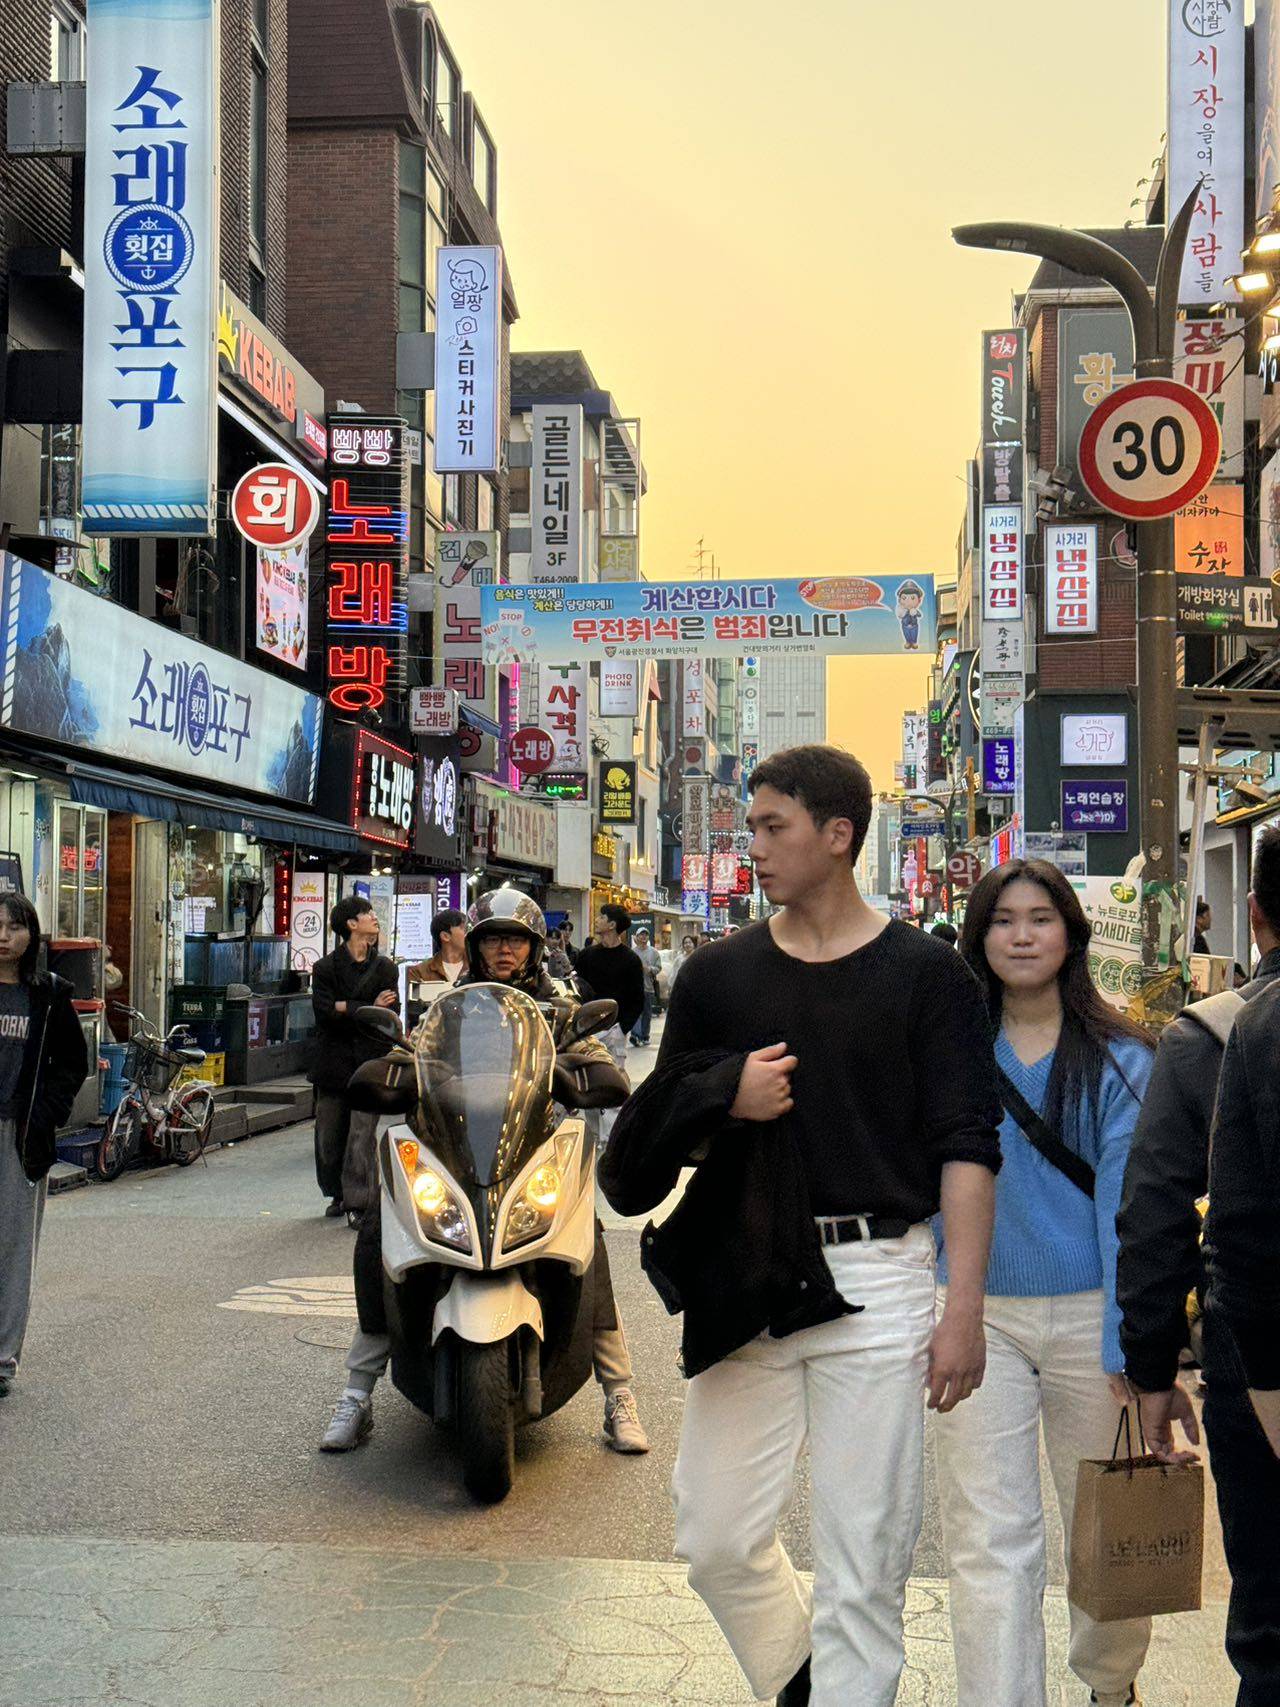   韩国有那么多中国人，不用担心留学的问题。